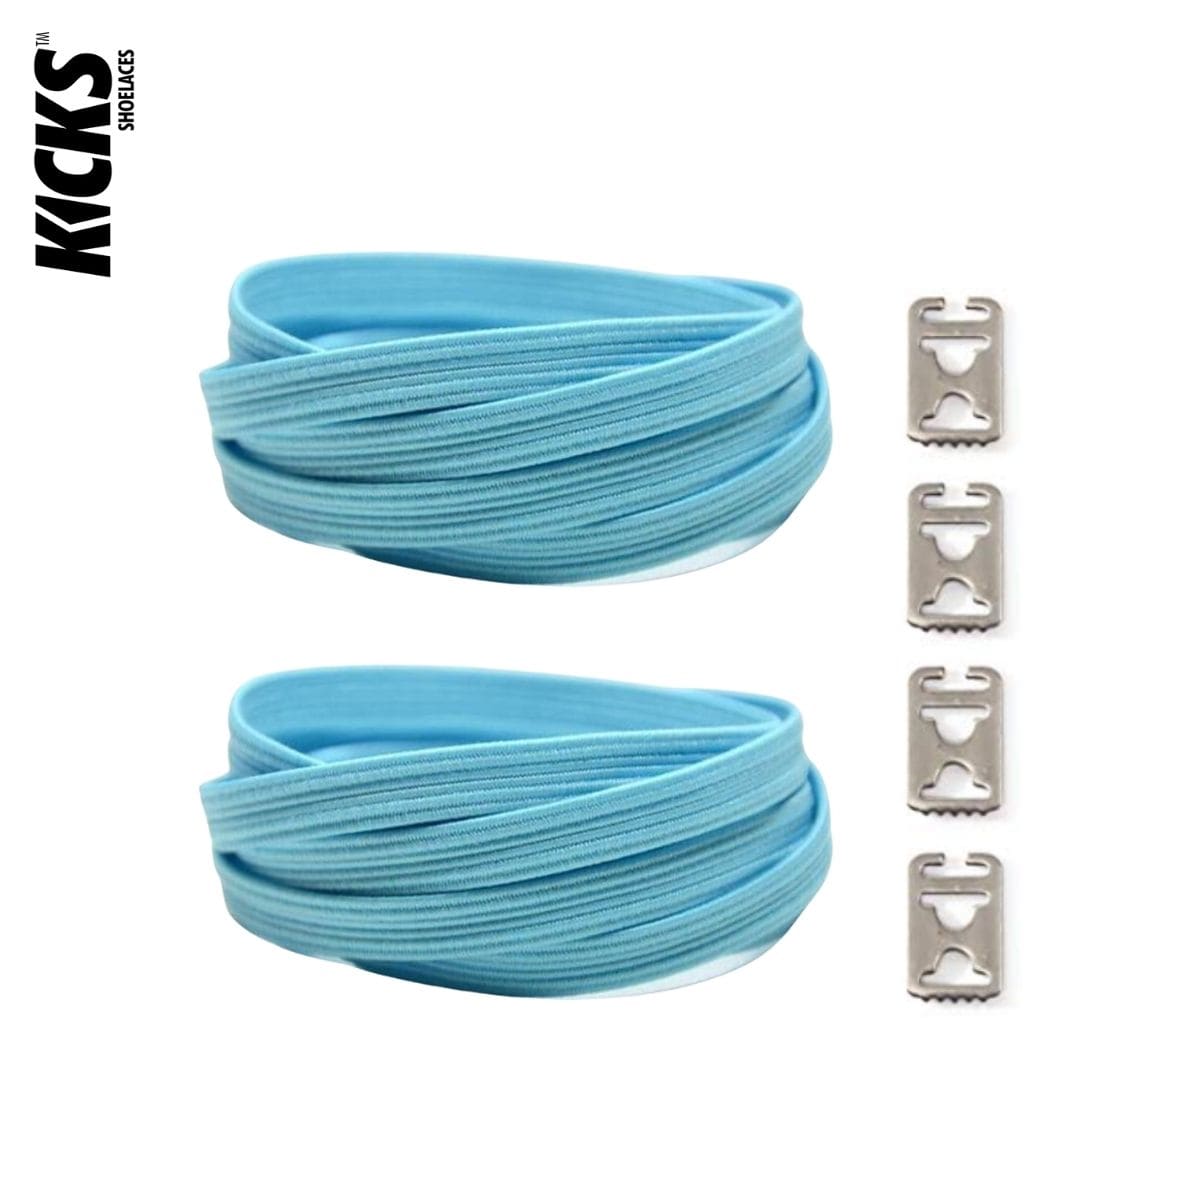 Replacement for Shoe Laces Blue No-Tie Shoelaces - Kicks Shoelaces